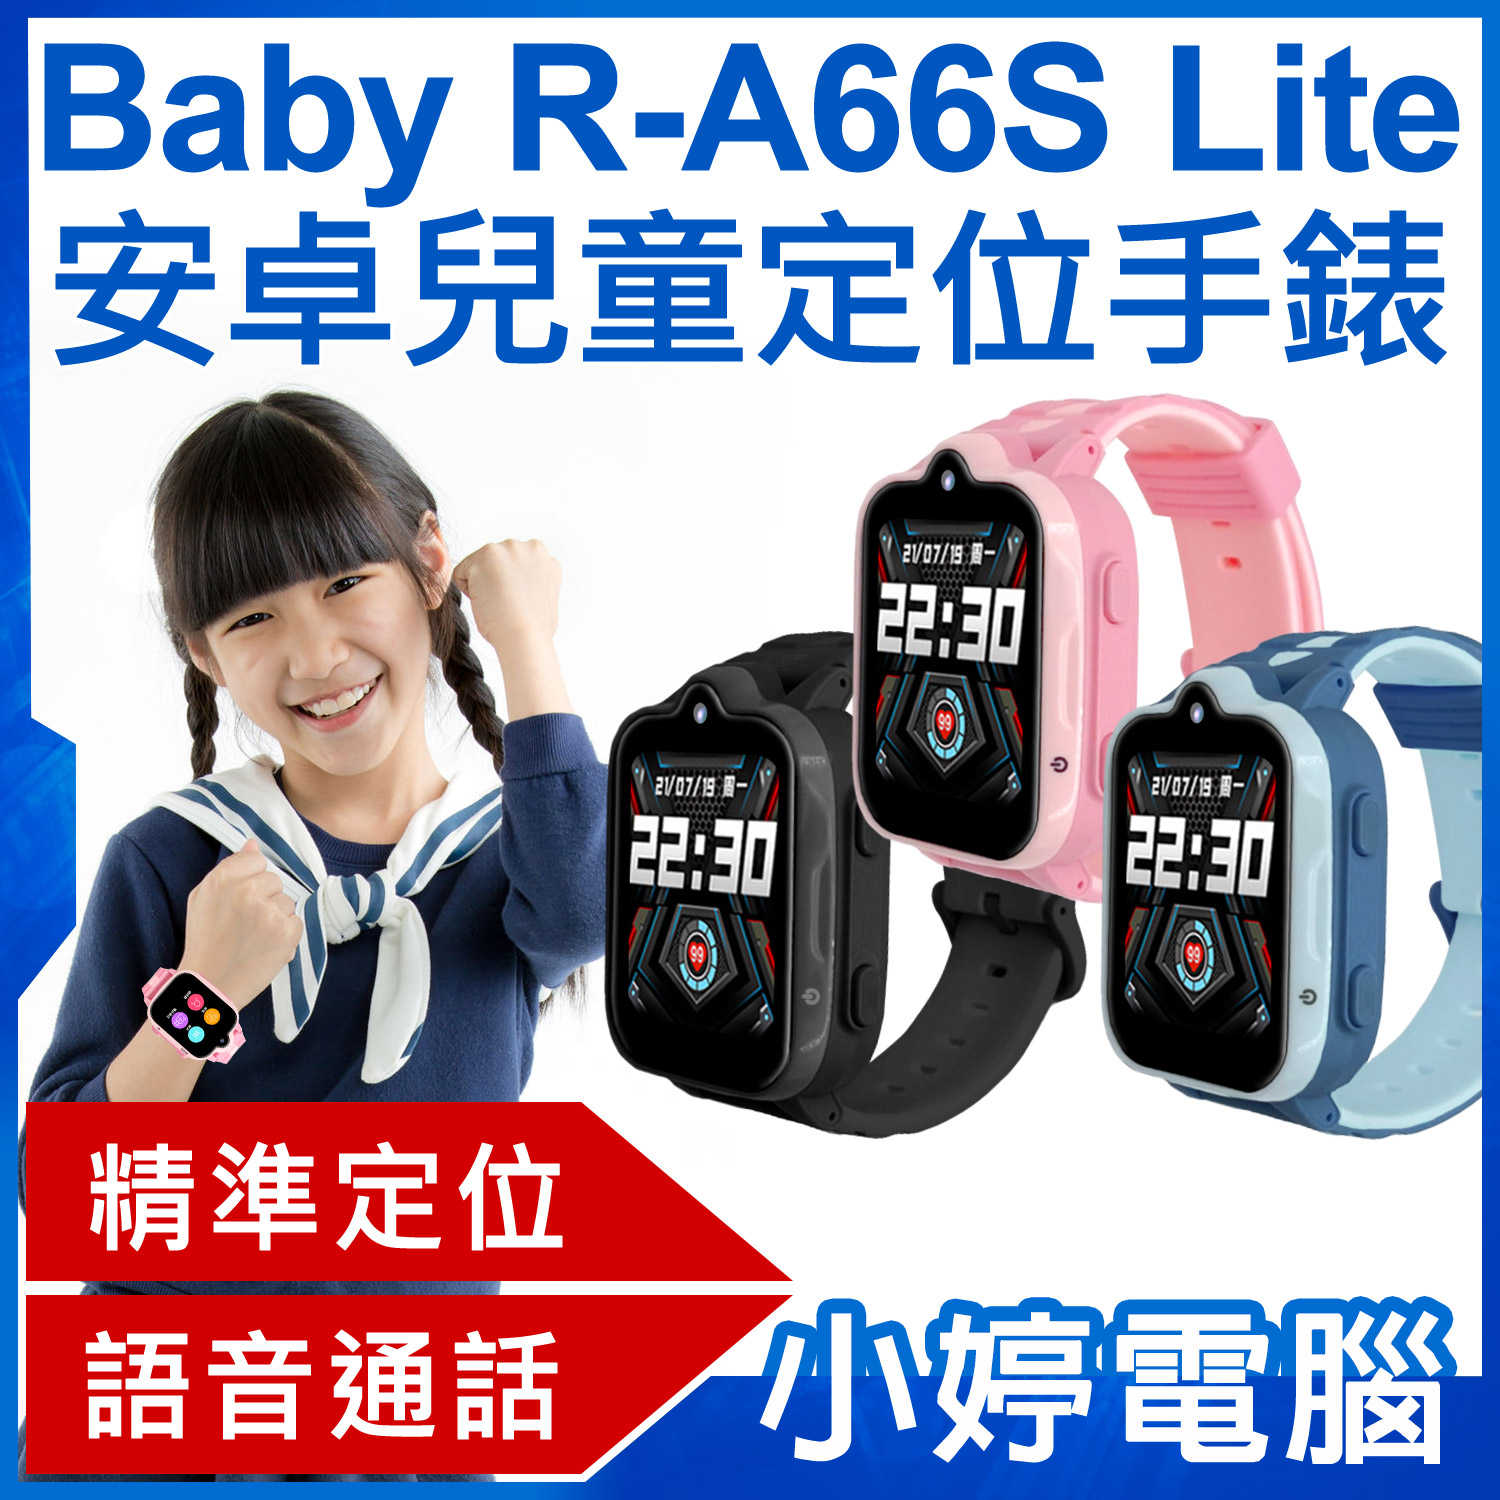 【小婷電腦】Baby R-A66S Lite 安卓兒童定位手錶 語音通話 遠程拍照 IP67防水 精準定